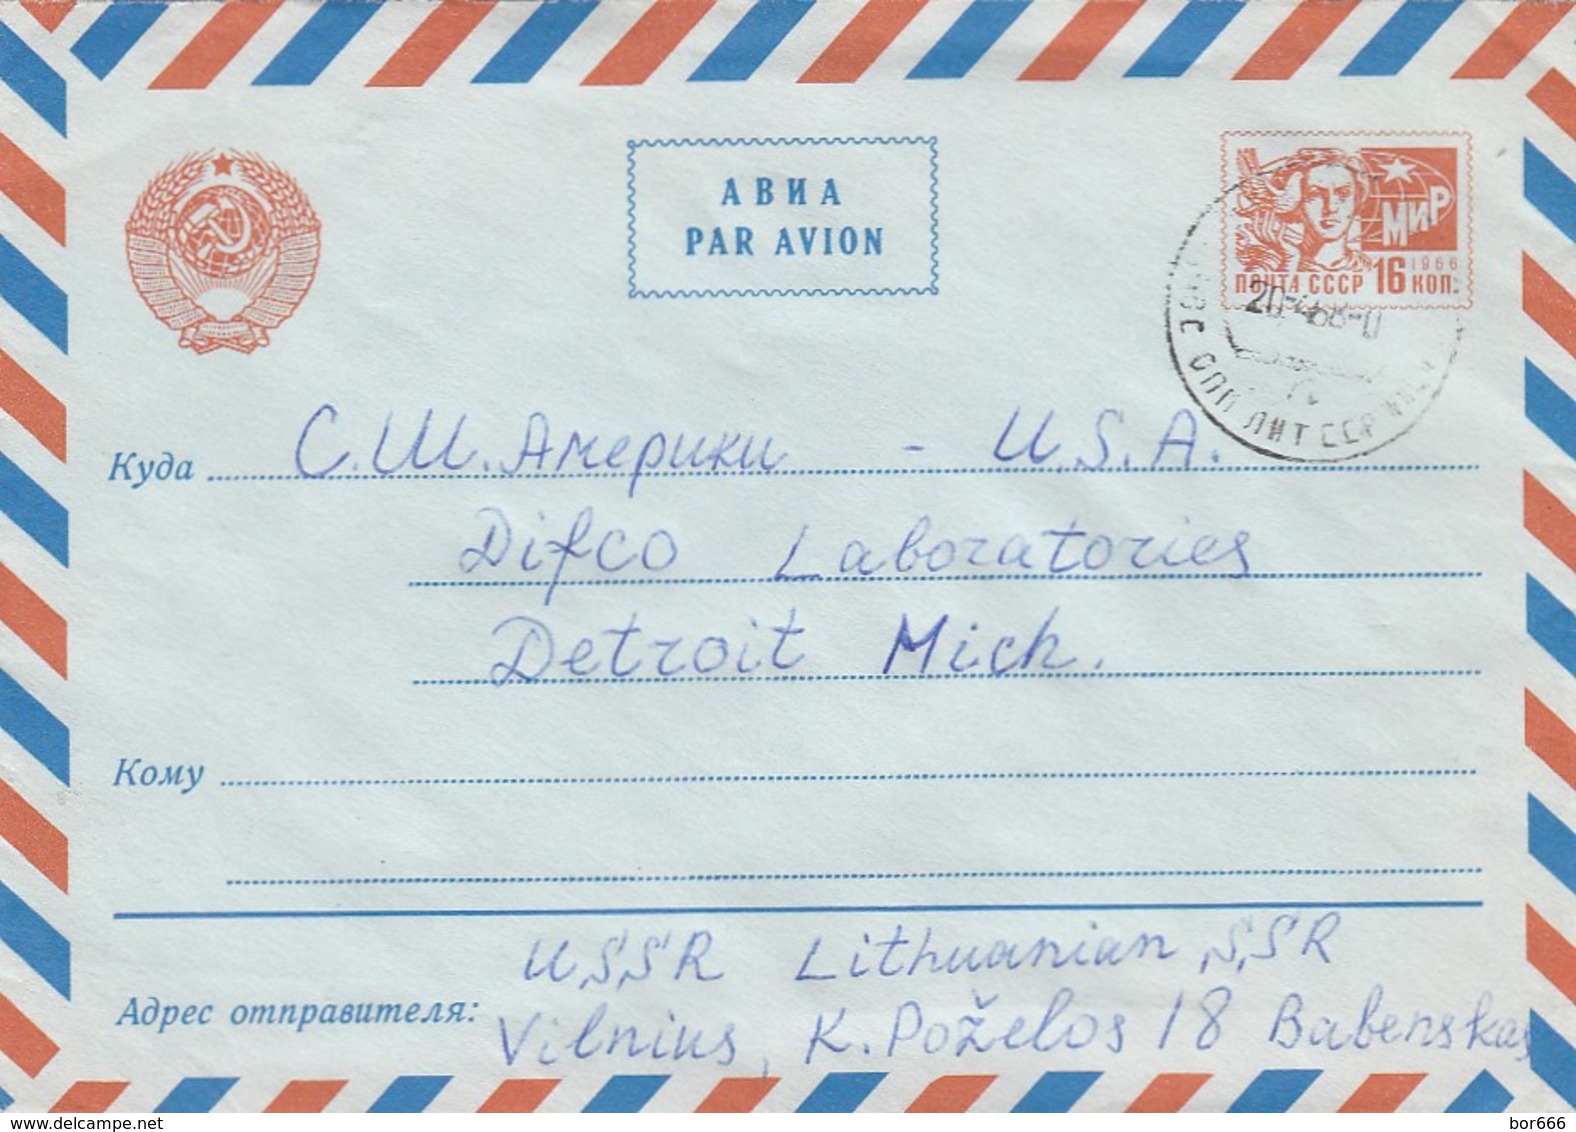 GOOD LITHUANIA Postal Cover To USA 1968 - Lithuania